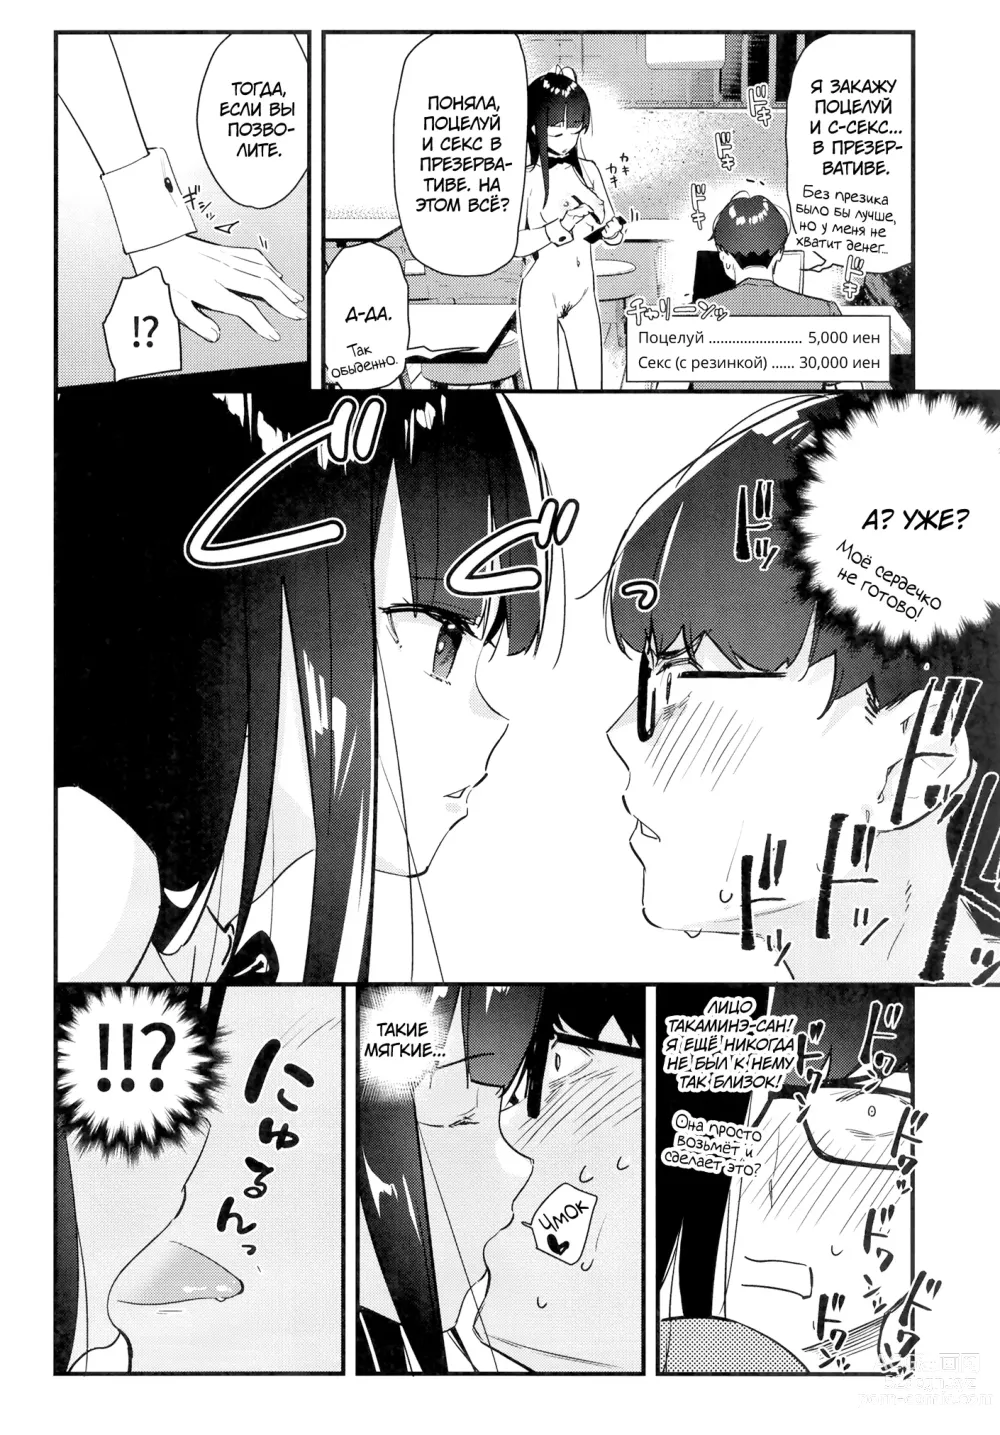 Page 21 of doujinshi Девушка, которая мне нравится, оказывает особые услуги постоянным клиентам